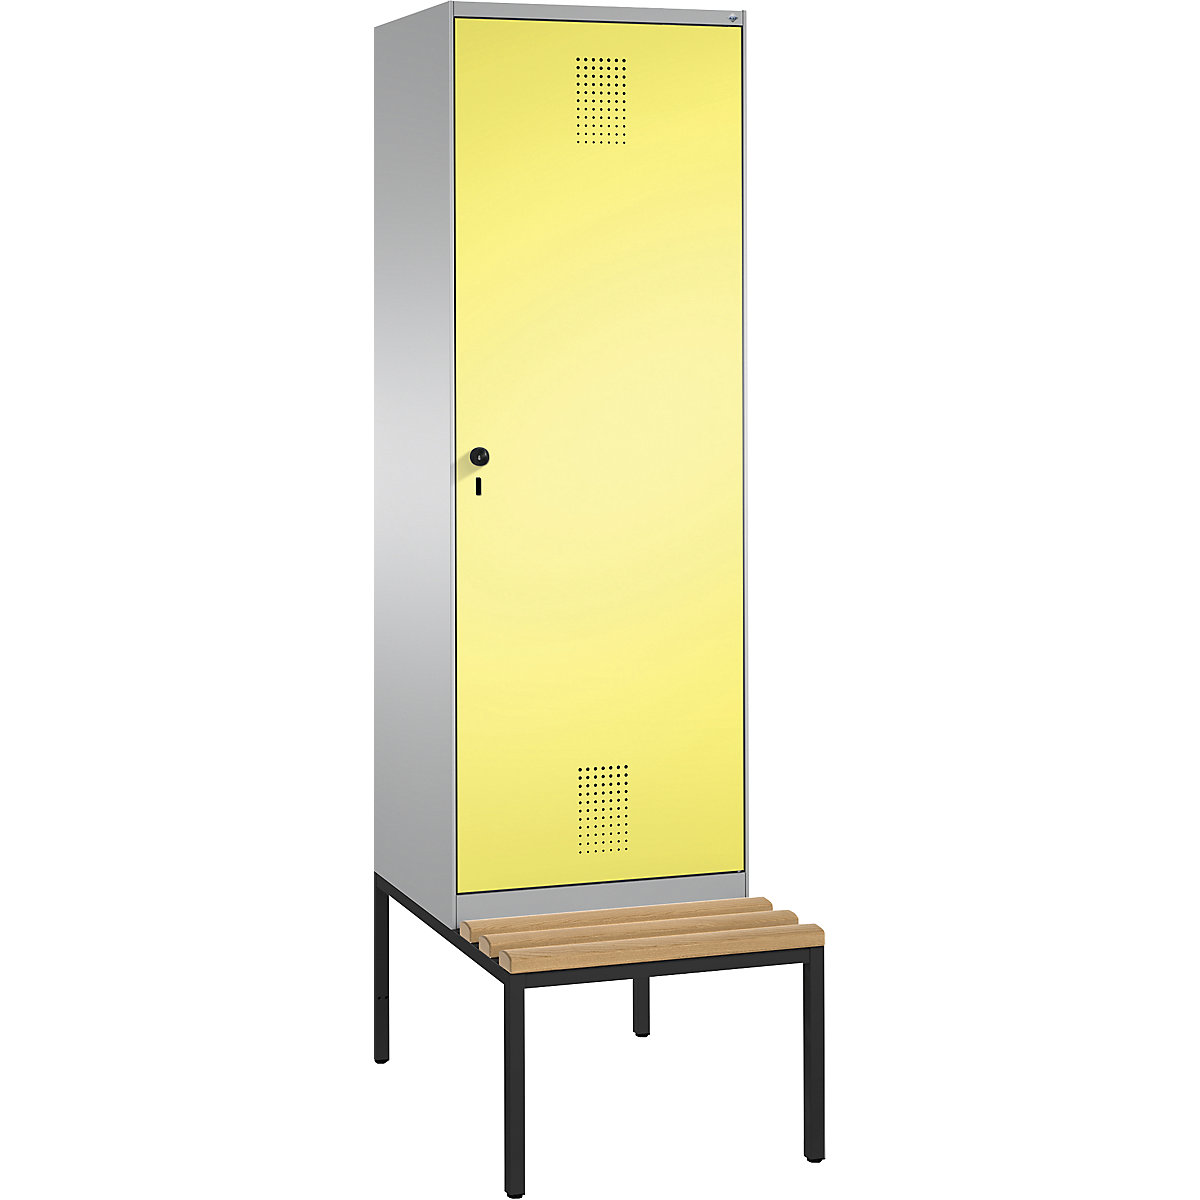 Šatní skříň s lavicí EVOLO s dveřmi přes 2 oddíly – C+P, 2 oddíly, 1 dveře, šířka oddílu 300 mm, bílý hliník / sírová žlutá-12